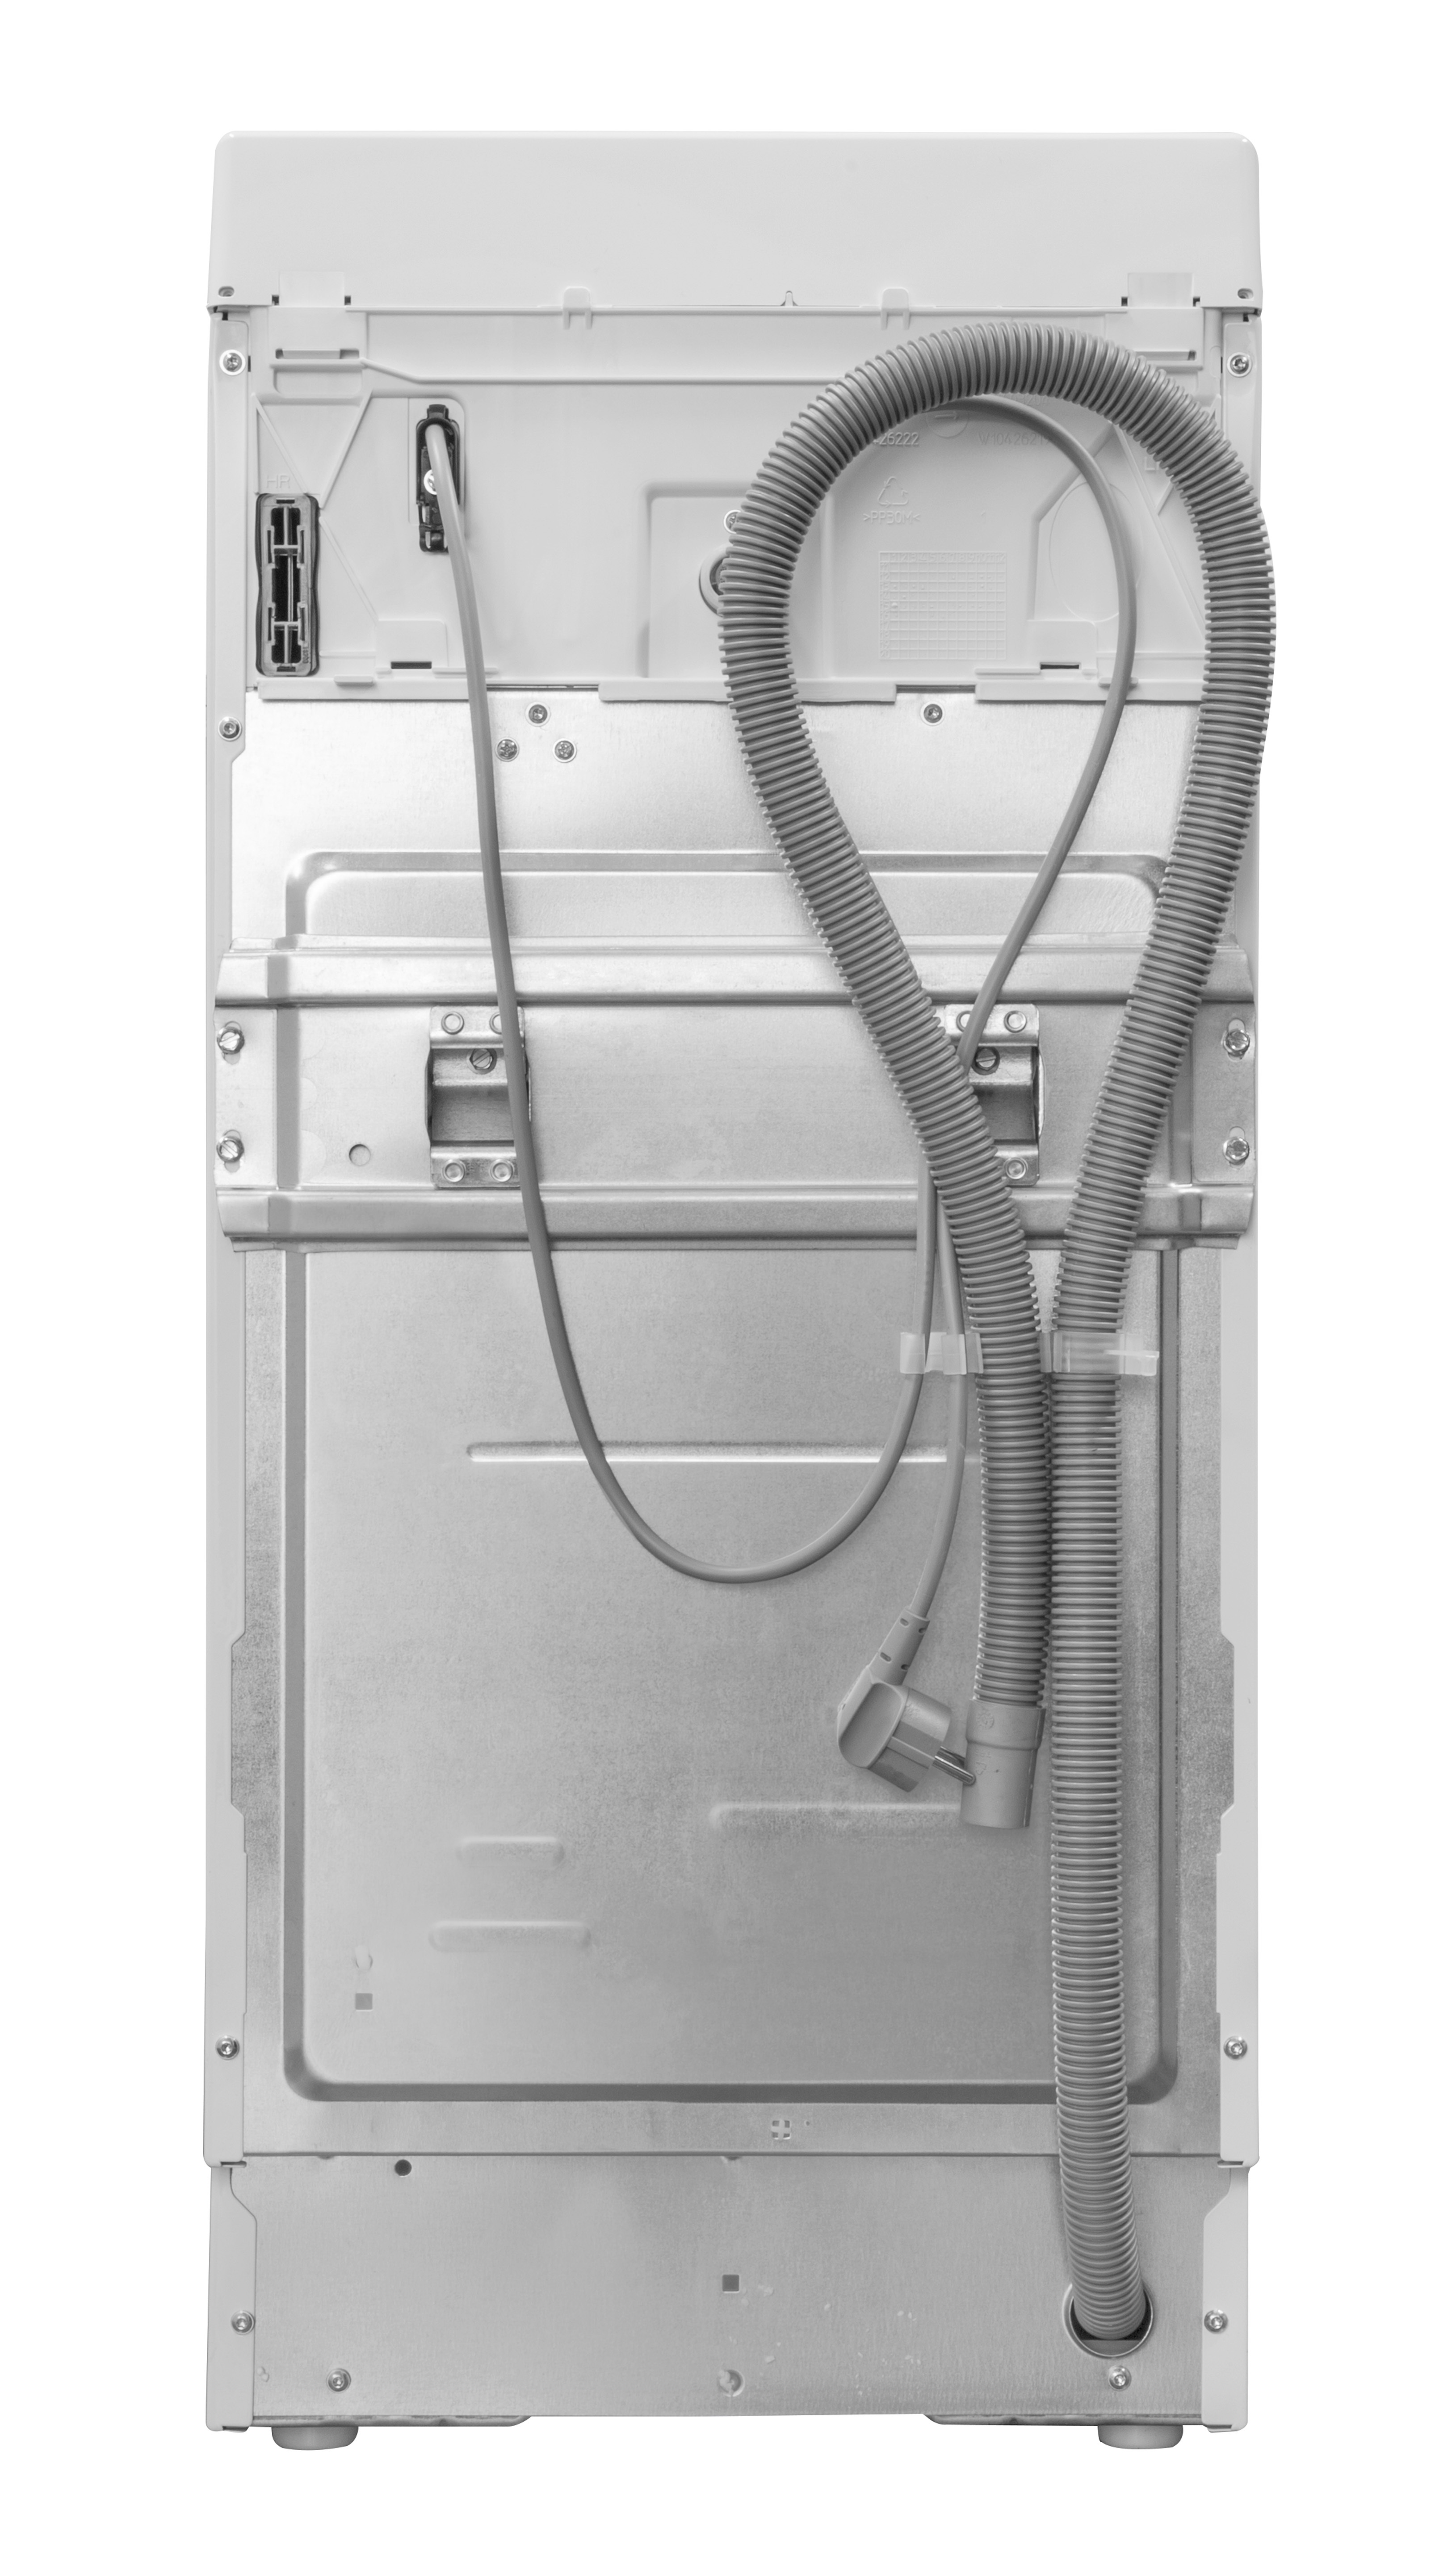 BAUKNECHT WMT ECOSTAR 6Z kg, N U/Min., BW (6 C) Waschmaschine 1151